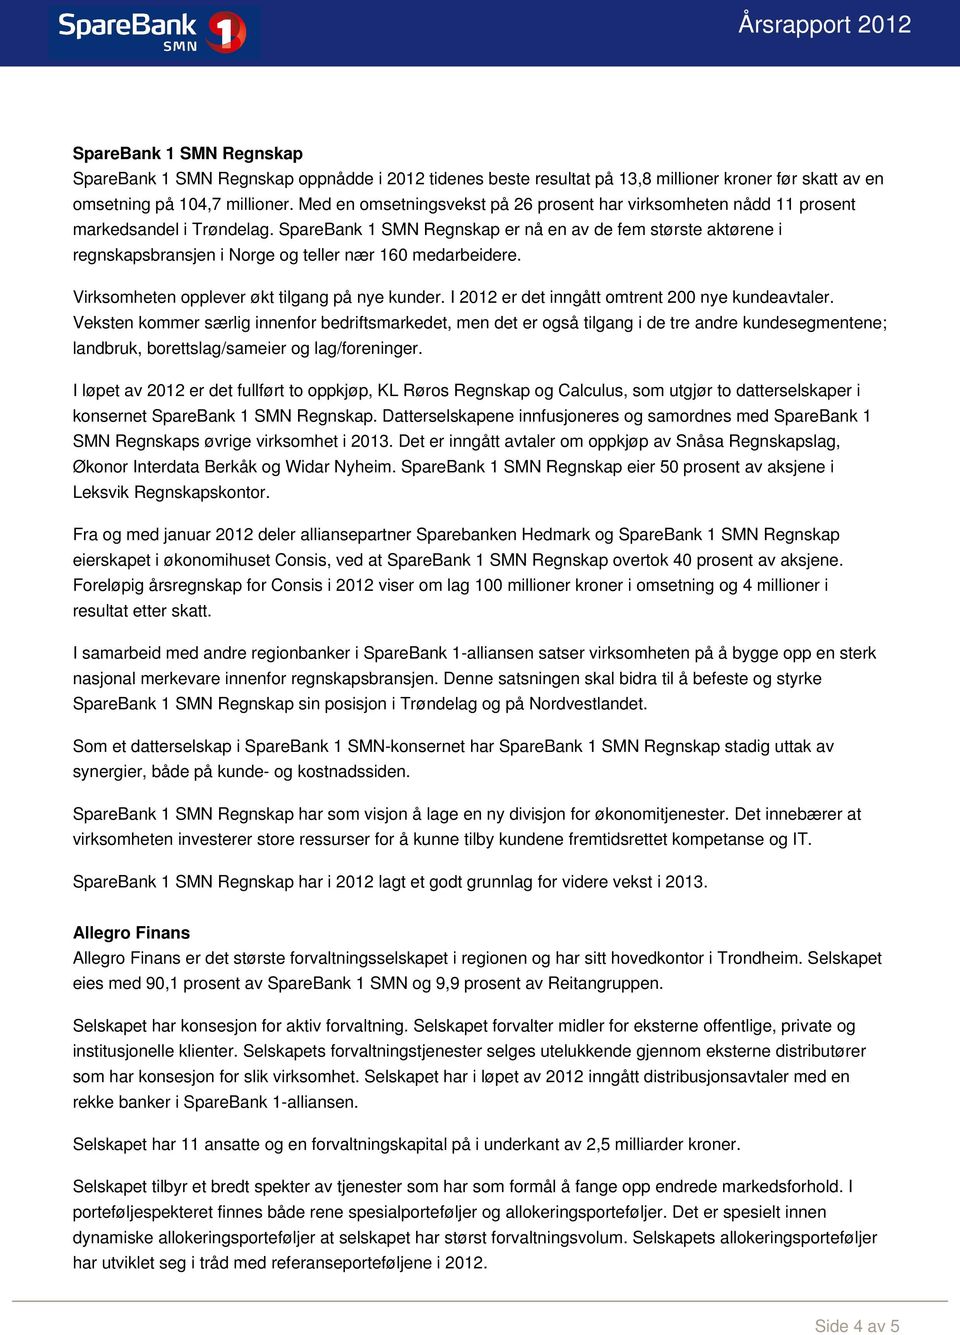 SpareBank 1 SMN Regnskap er nå en av de fem største aktørene i regnskapsbransjen i Norge og teller nær 160 medarbeidere. Virksomheten opplever økt tilgang på nye kunder.